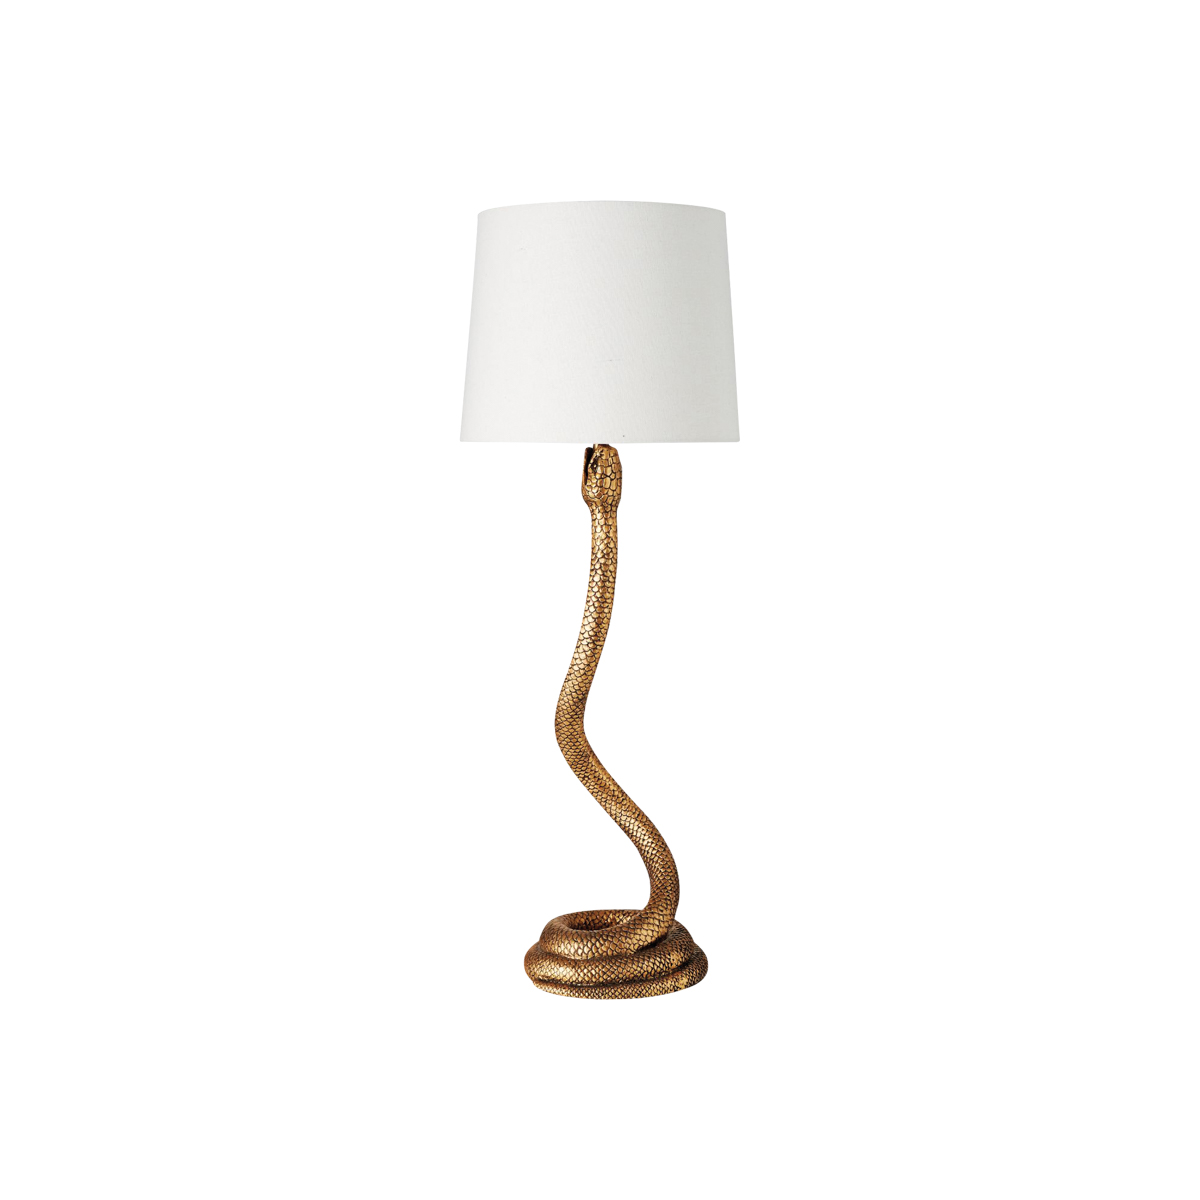 Lamp with snake-like base.